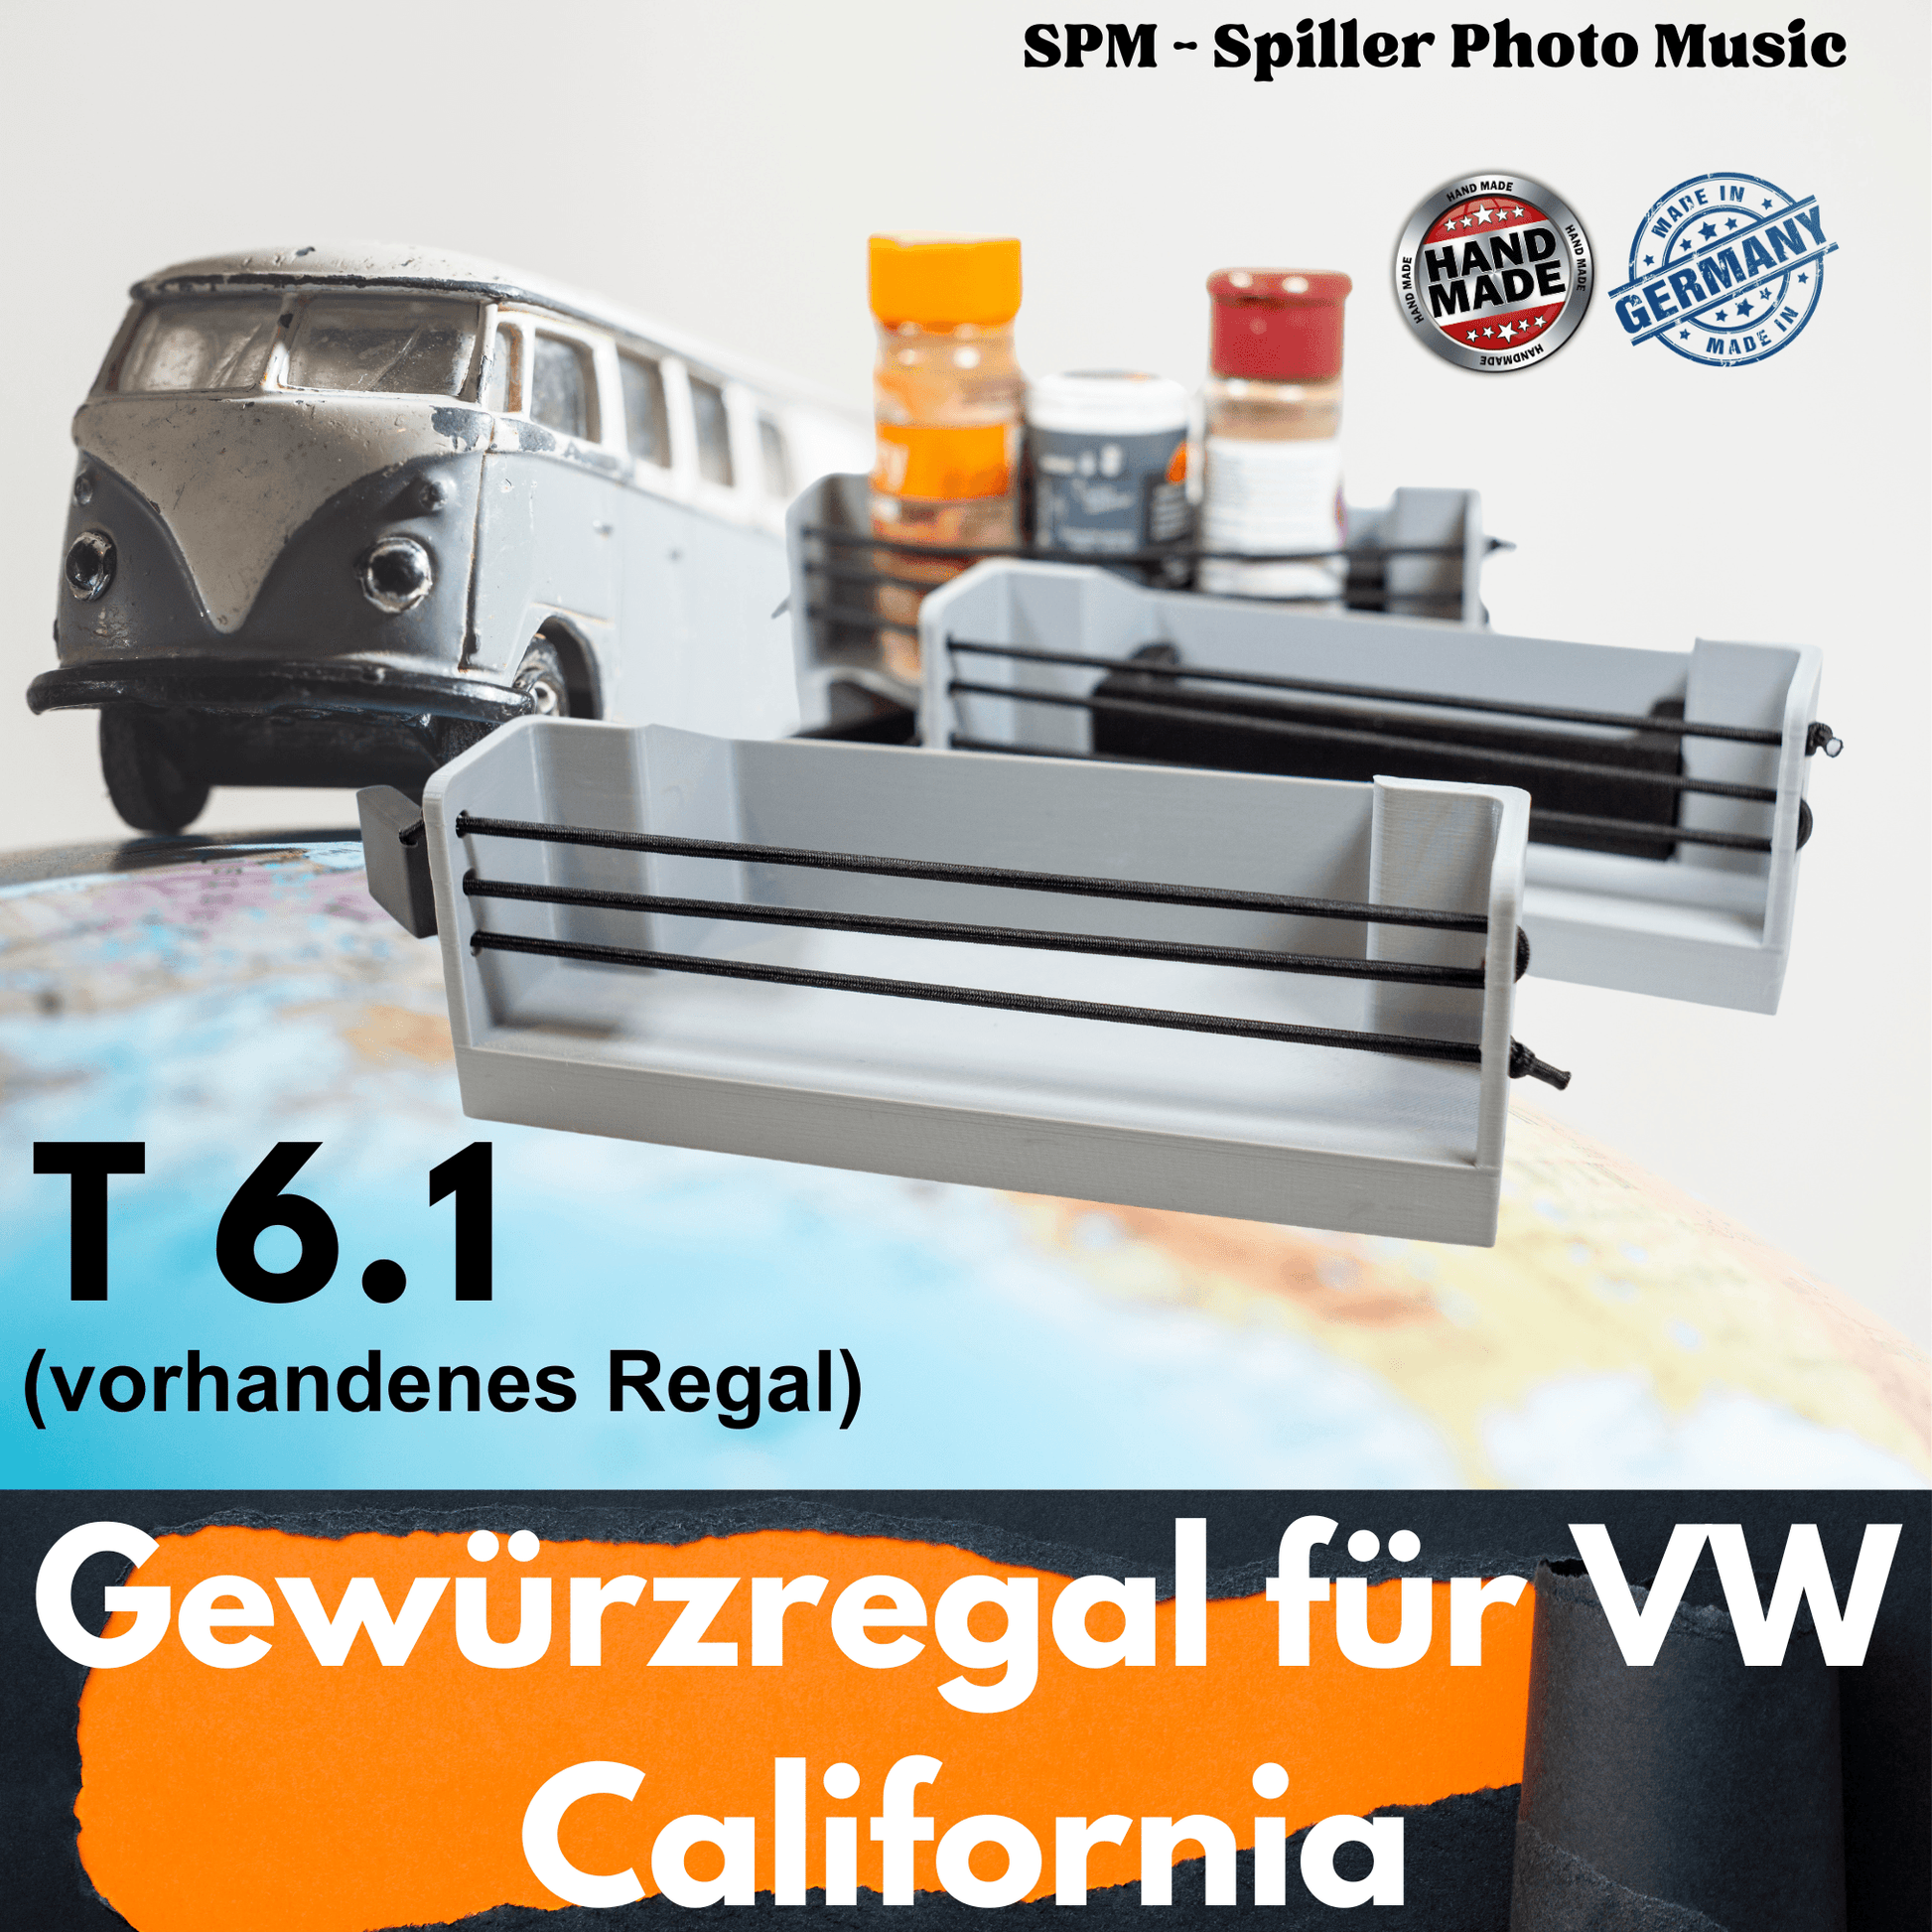 VW California T6.1 Gewürzregal 3er Set zum Aufkleben in die vorhandenen Regale in der Verdunklung vom kleinen Fenster - SPM3x.com - Spillerphoto & Music